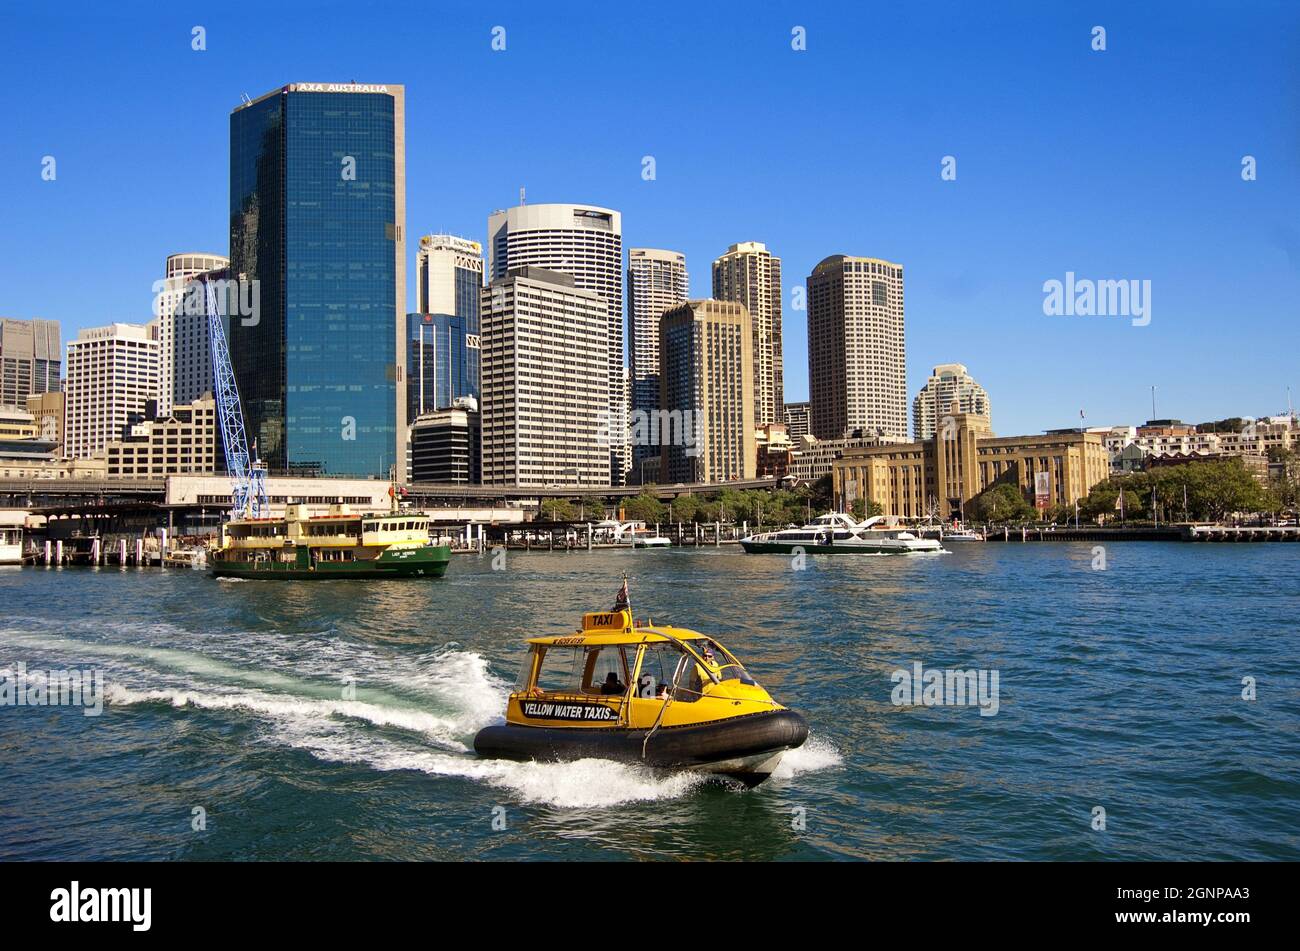 City scene of Sydney with harbour, Australia, Sydney Stock Photo